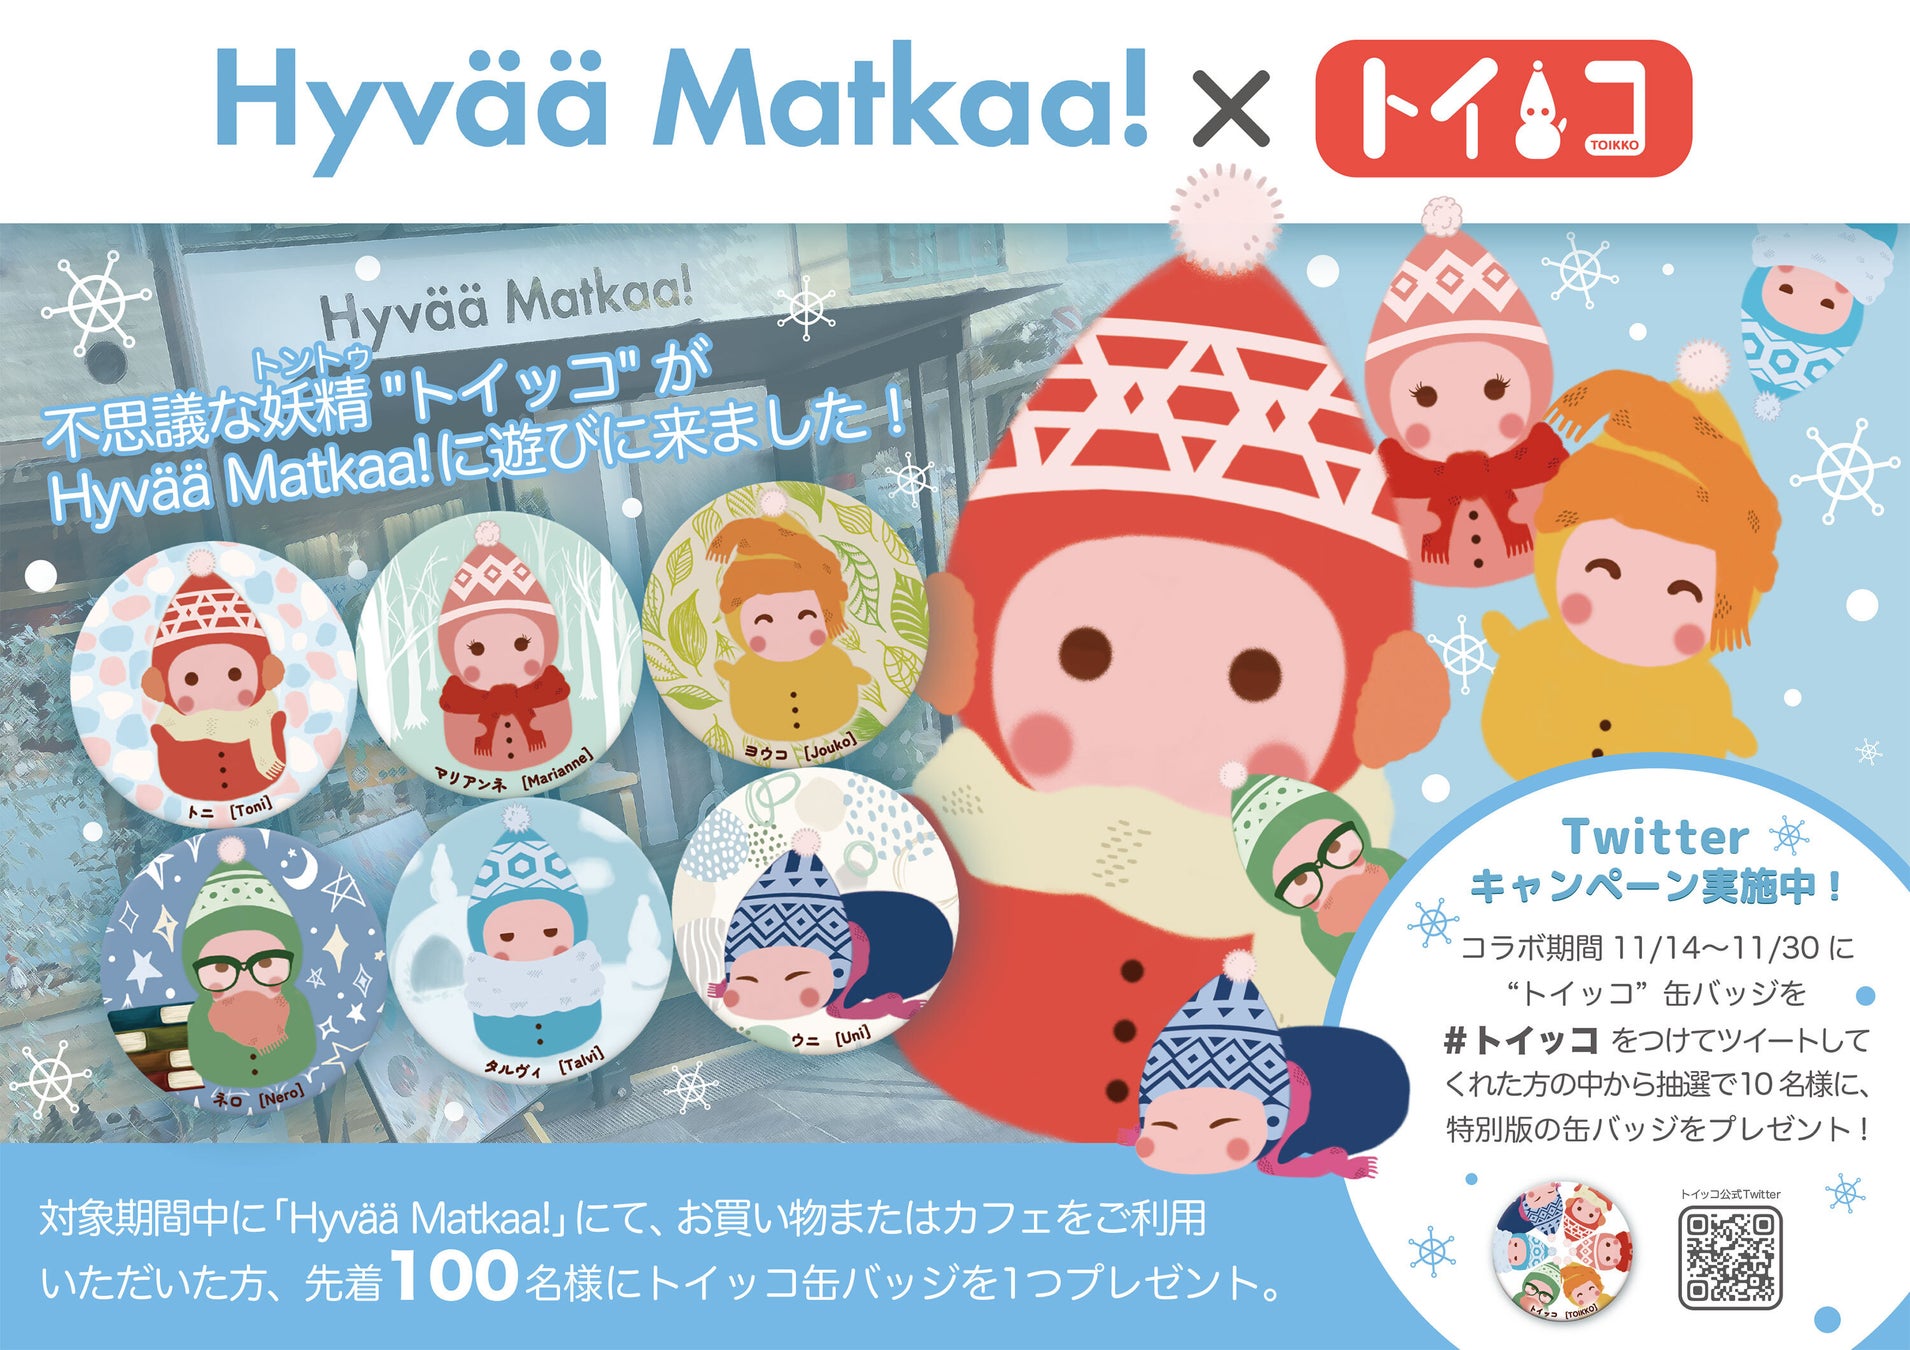 北欧の不思議な妖精をモチーフにした人気キャラクター！「トイッコ」と東京表参道の人気北欧カフェ「Hyvää Matkaa!」がコラボレーション！ノベルティープレゼントフェアーを開催。